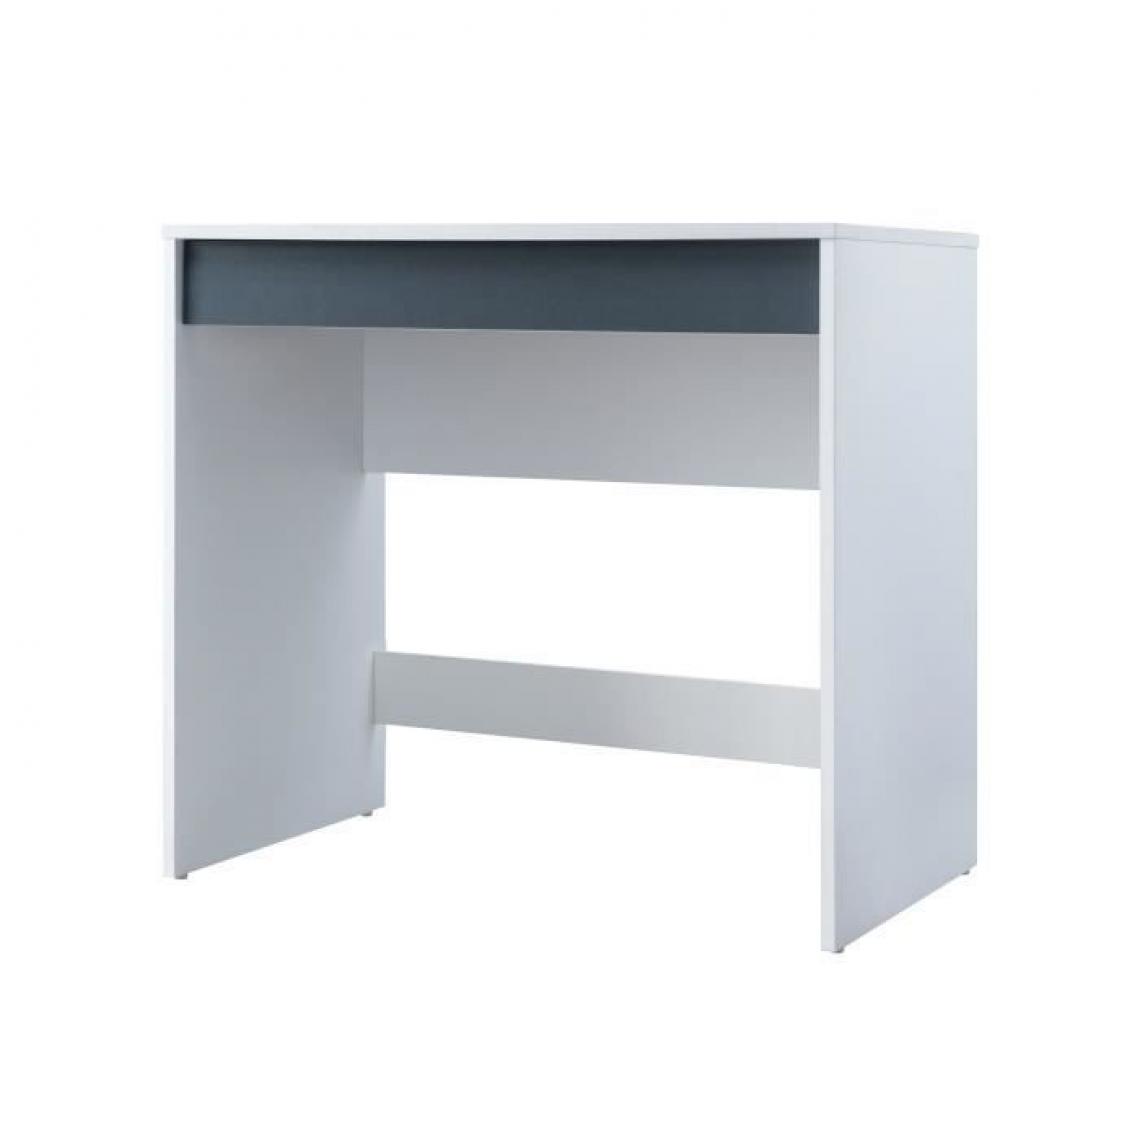 Sans Marque - COMPO Bureau 1 tiroir - Blanc et gris - Bicolore Blanc/Gris - L 80 x P 45 x H 75cm - Bureaux